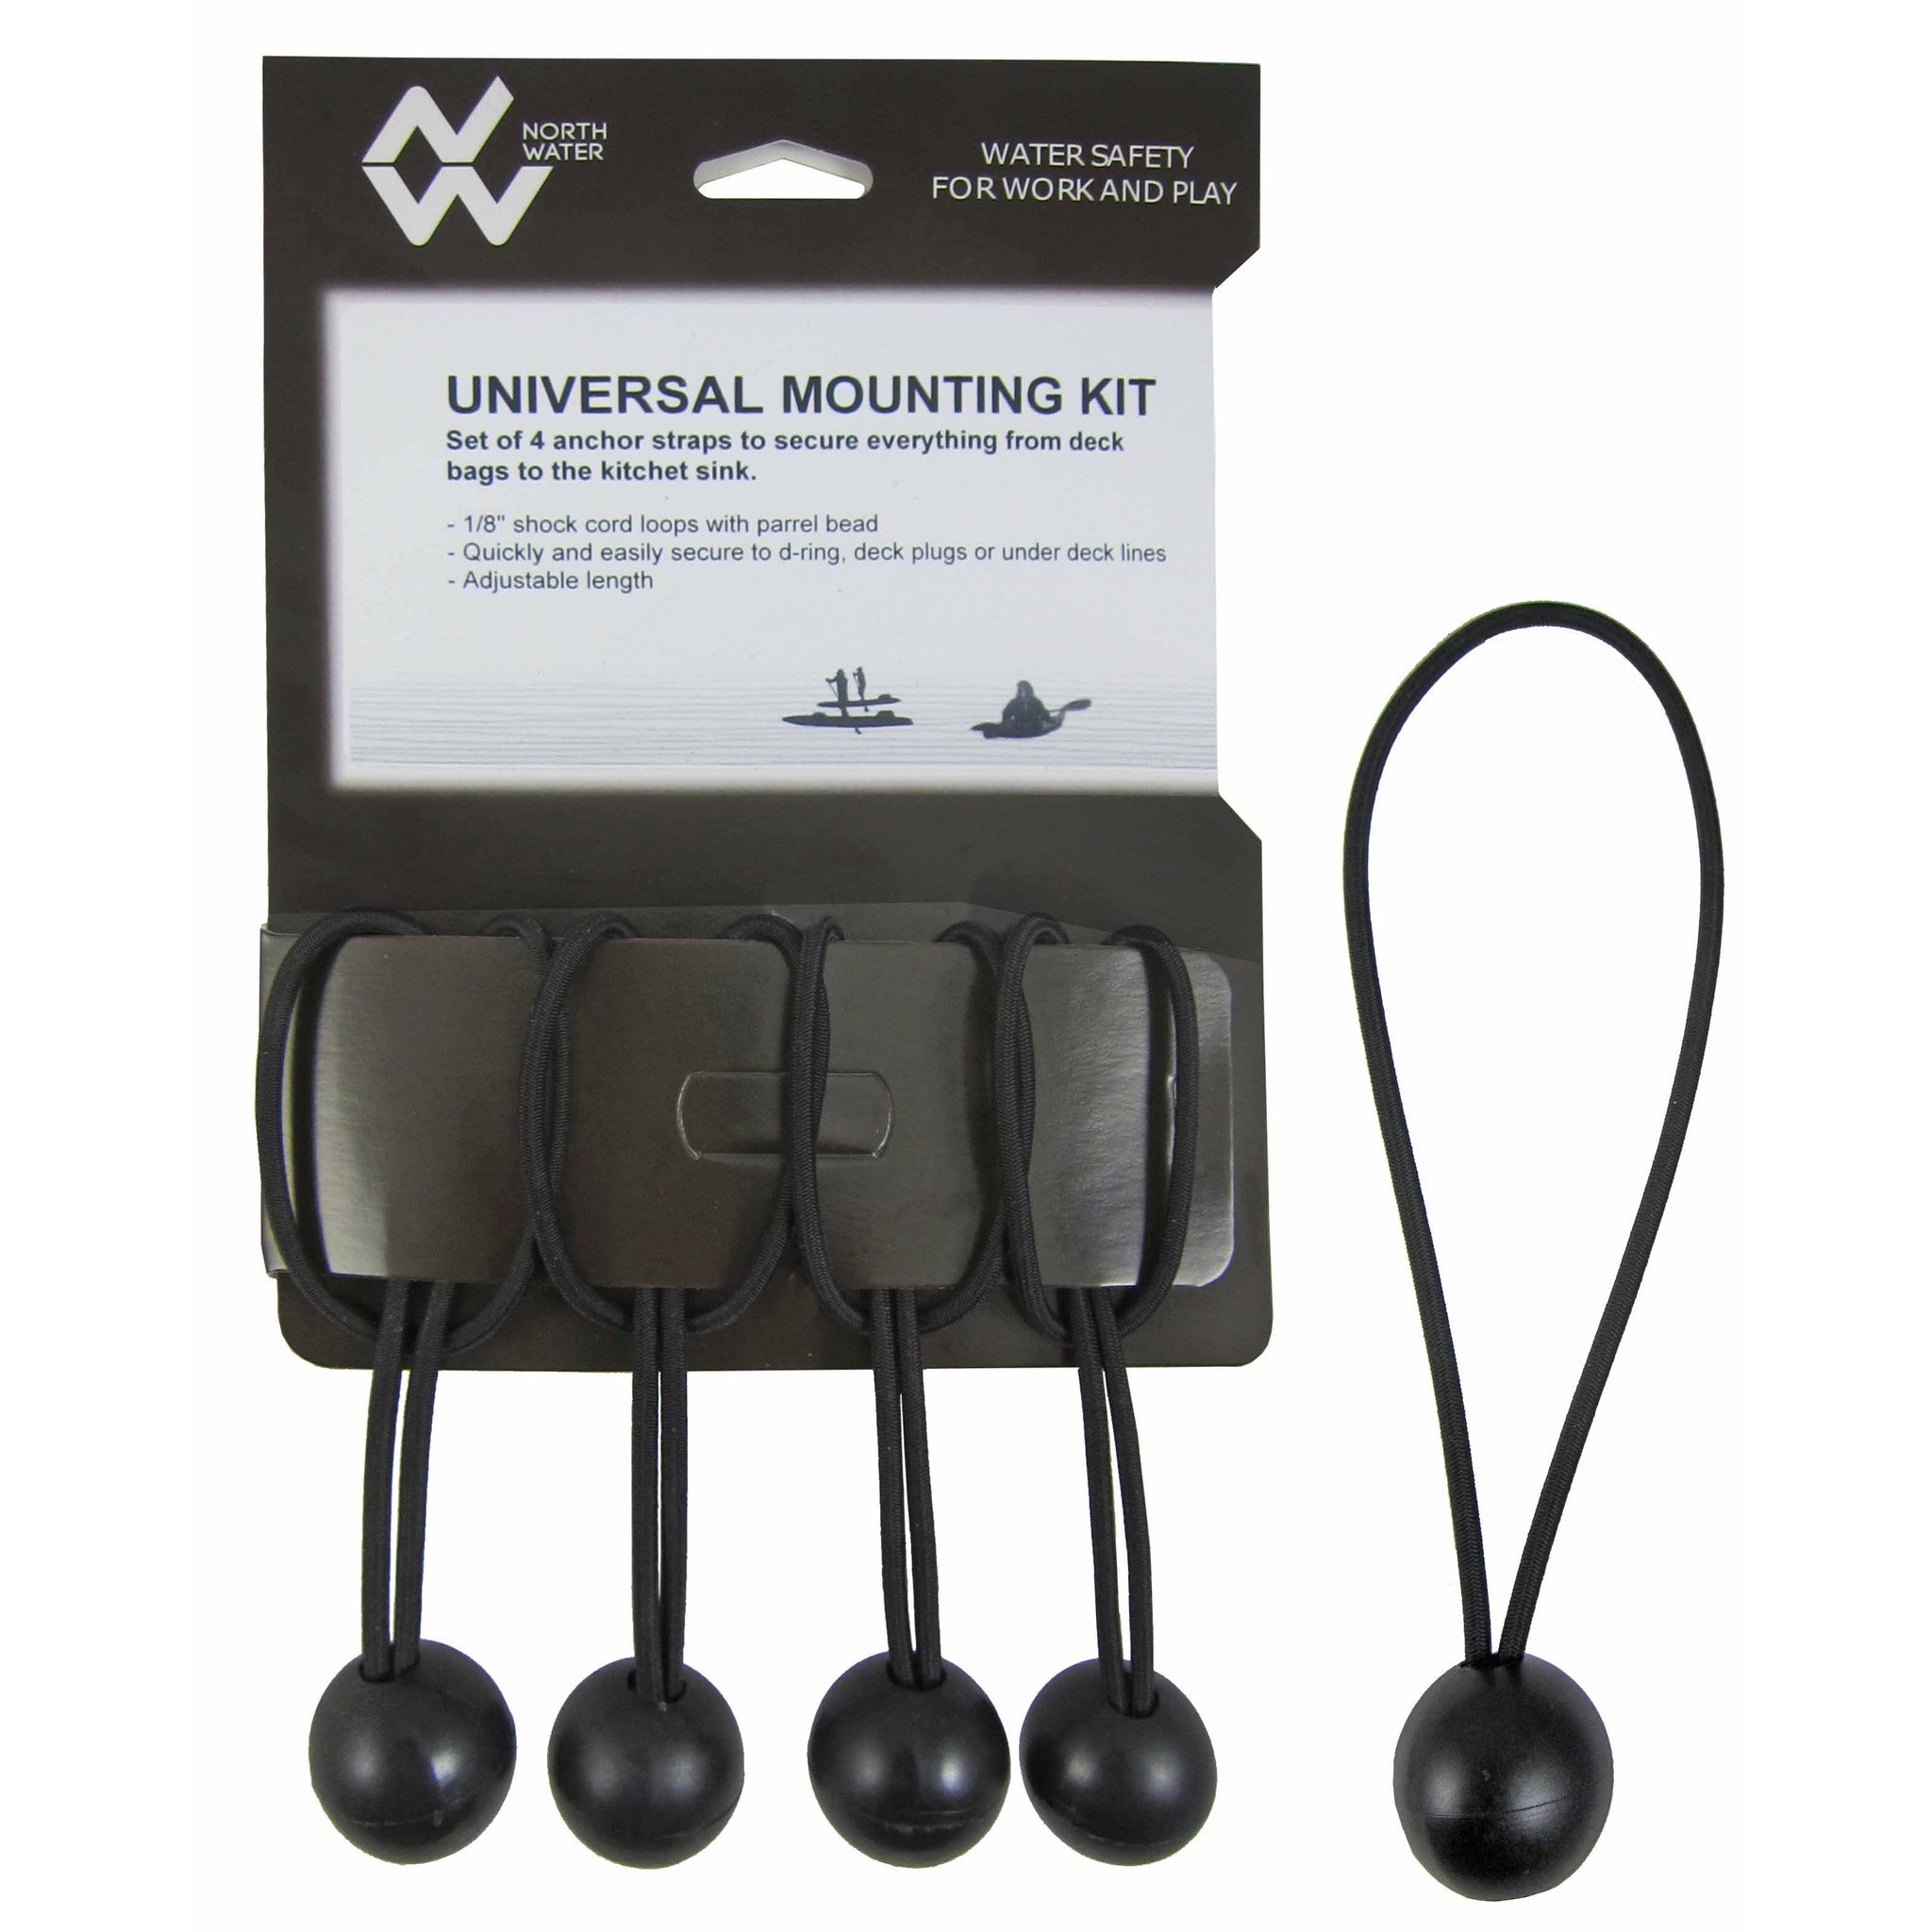 Universal Mounting Kit